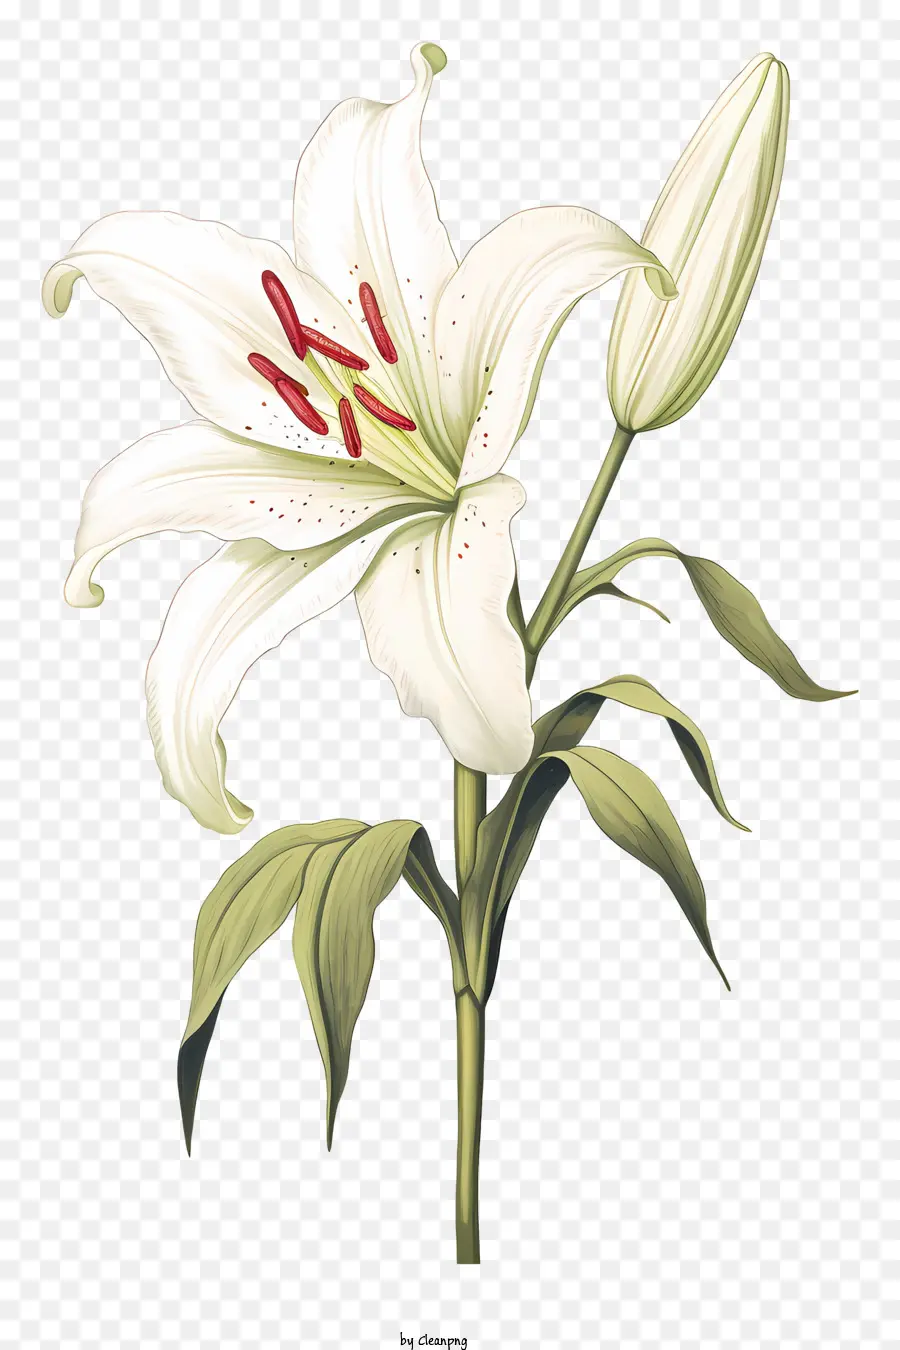 giglio bianco fiore - Lily bianco con petali chiusi e centro bianco